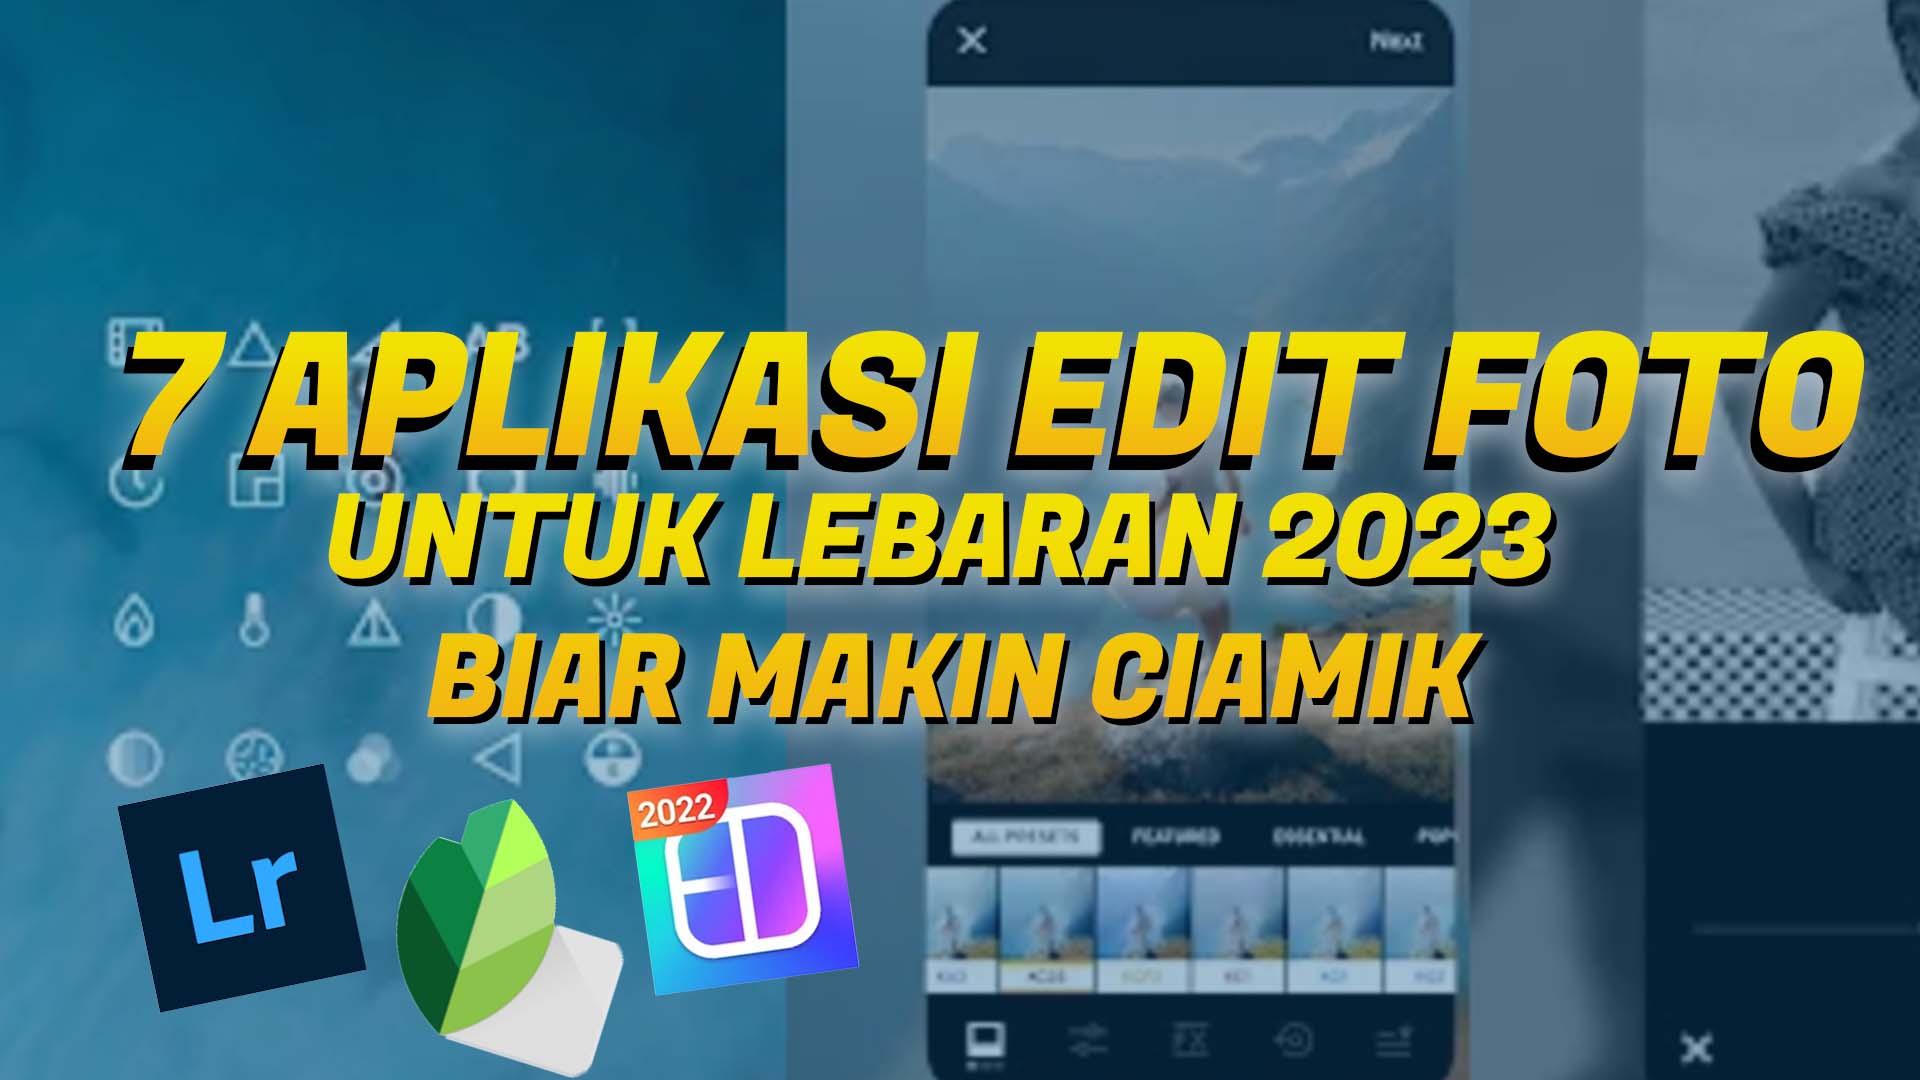 7 Aplikasi Edit Foto untuk Lebaran 2023 biar Makin Ciamik